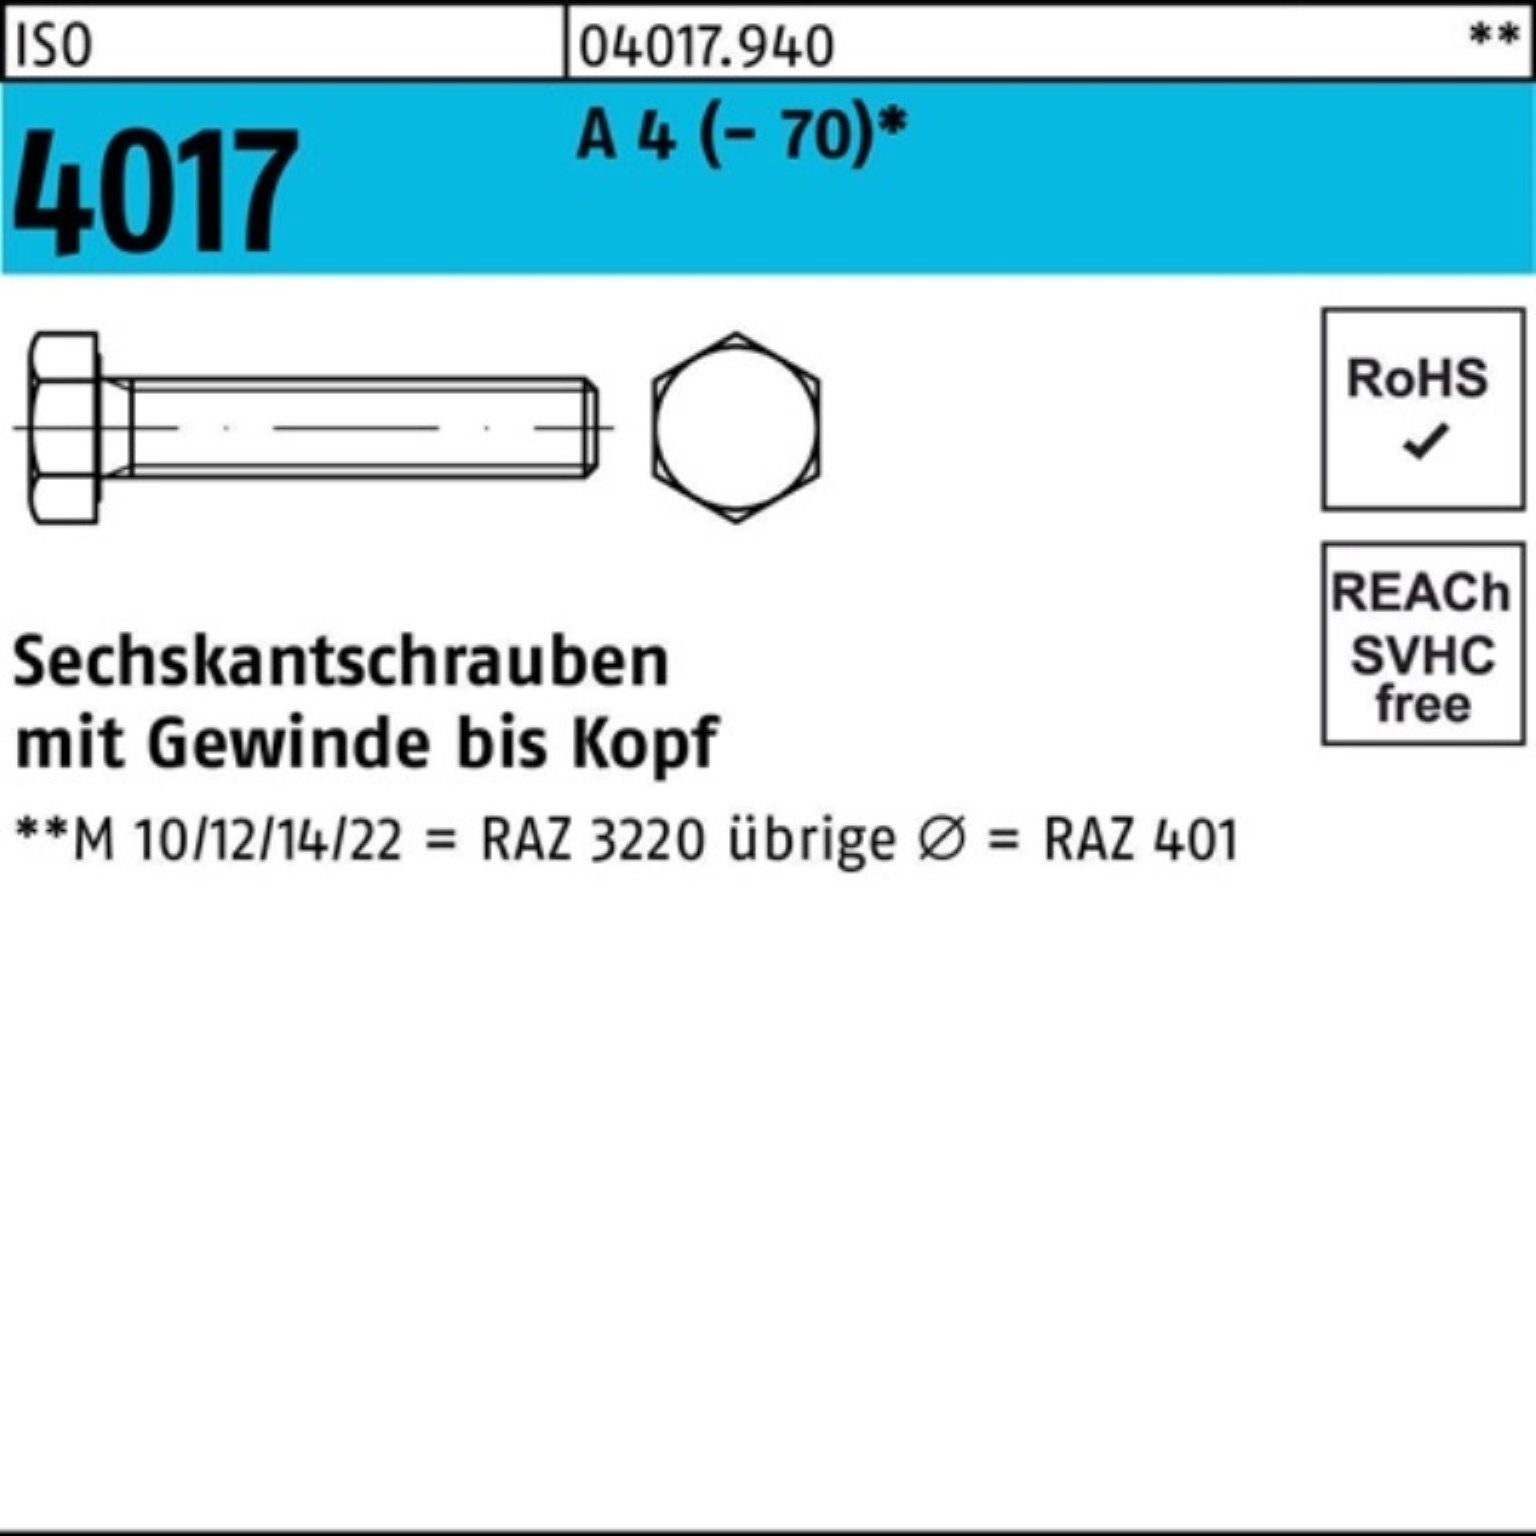 Bufab Sechskantschraube 100er Pack Sechskantschraube ISO 4017 VG M8x 40 A 4 (70) 100 Stück